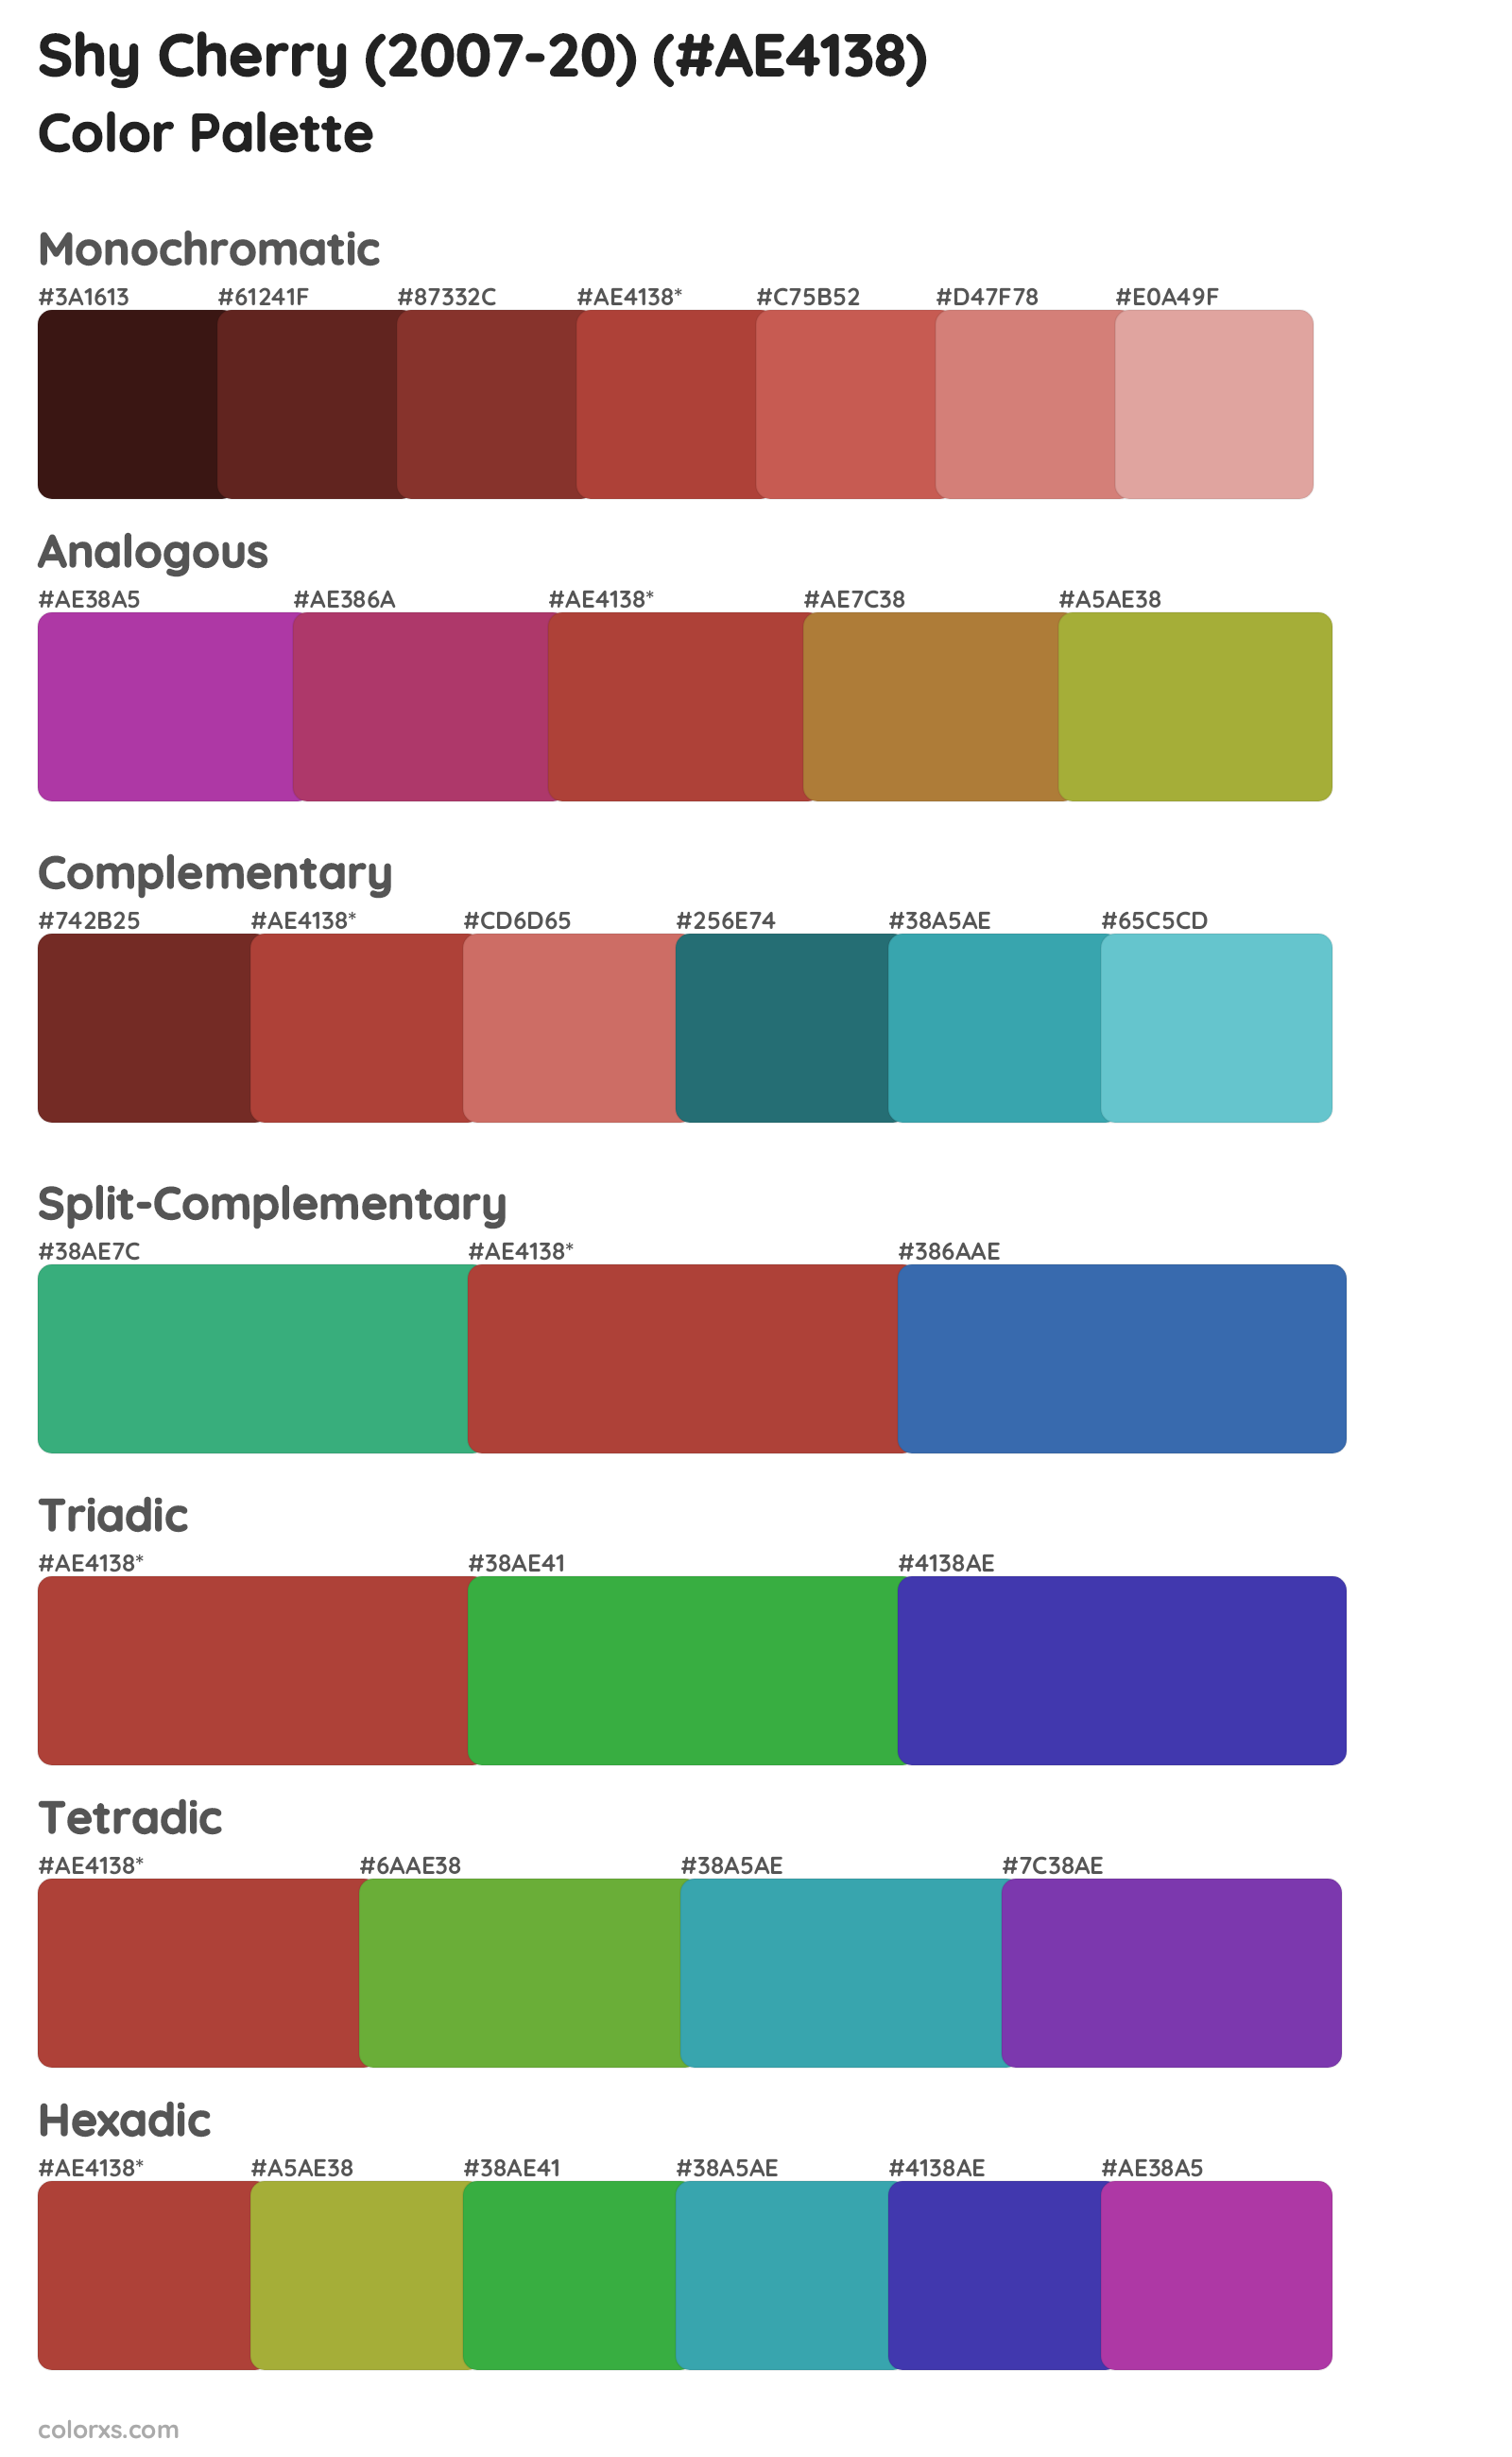 Shy Cherry (2007-20) Color Scheme Palettes